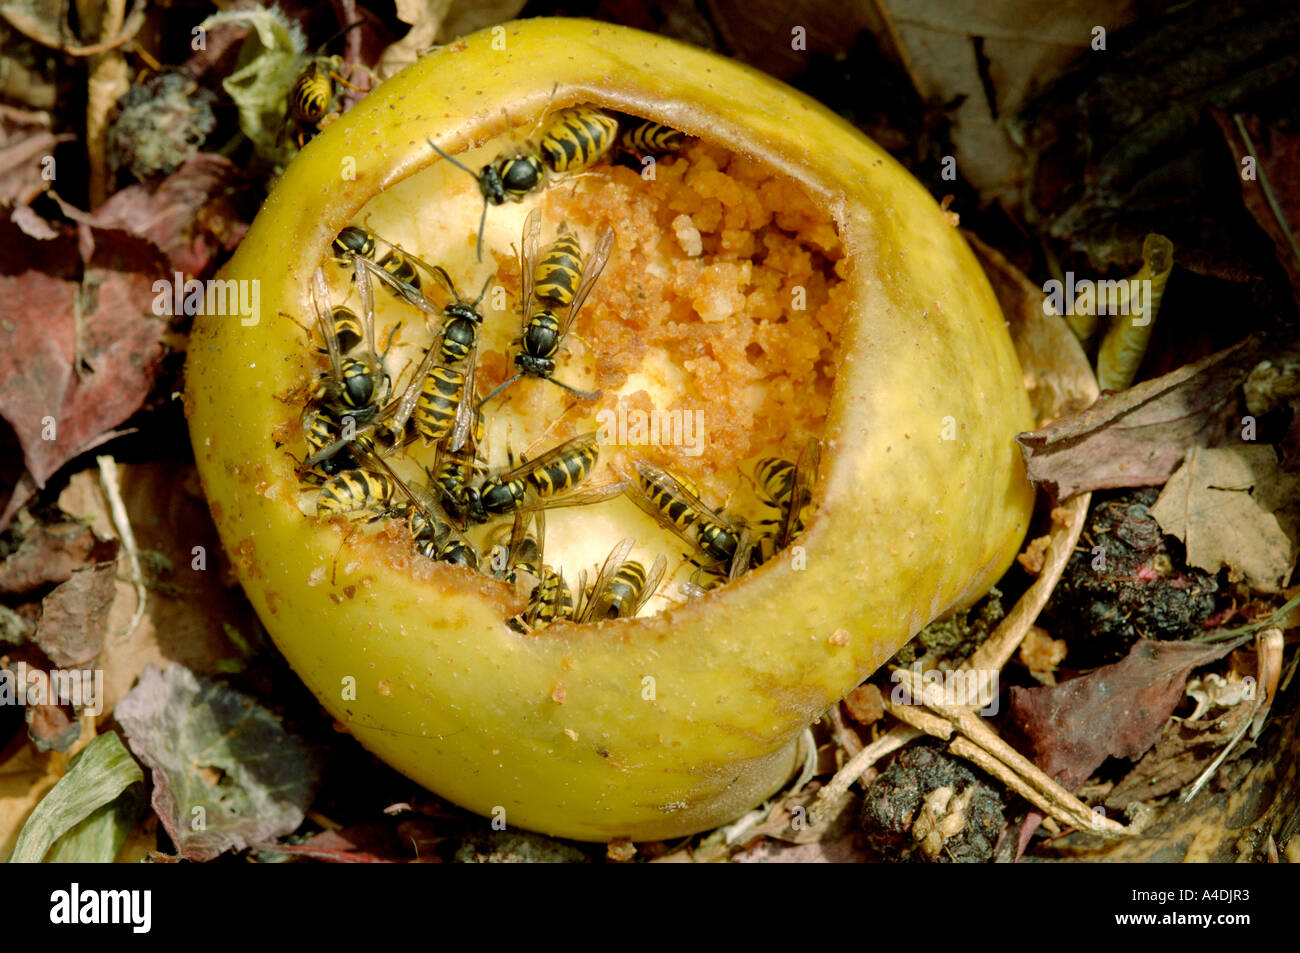 Common wasps, Vespula vulgaris, feeding on apple on compost heap. Stock Photo